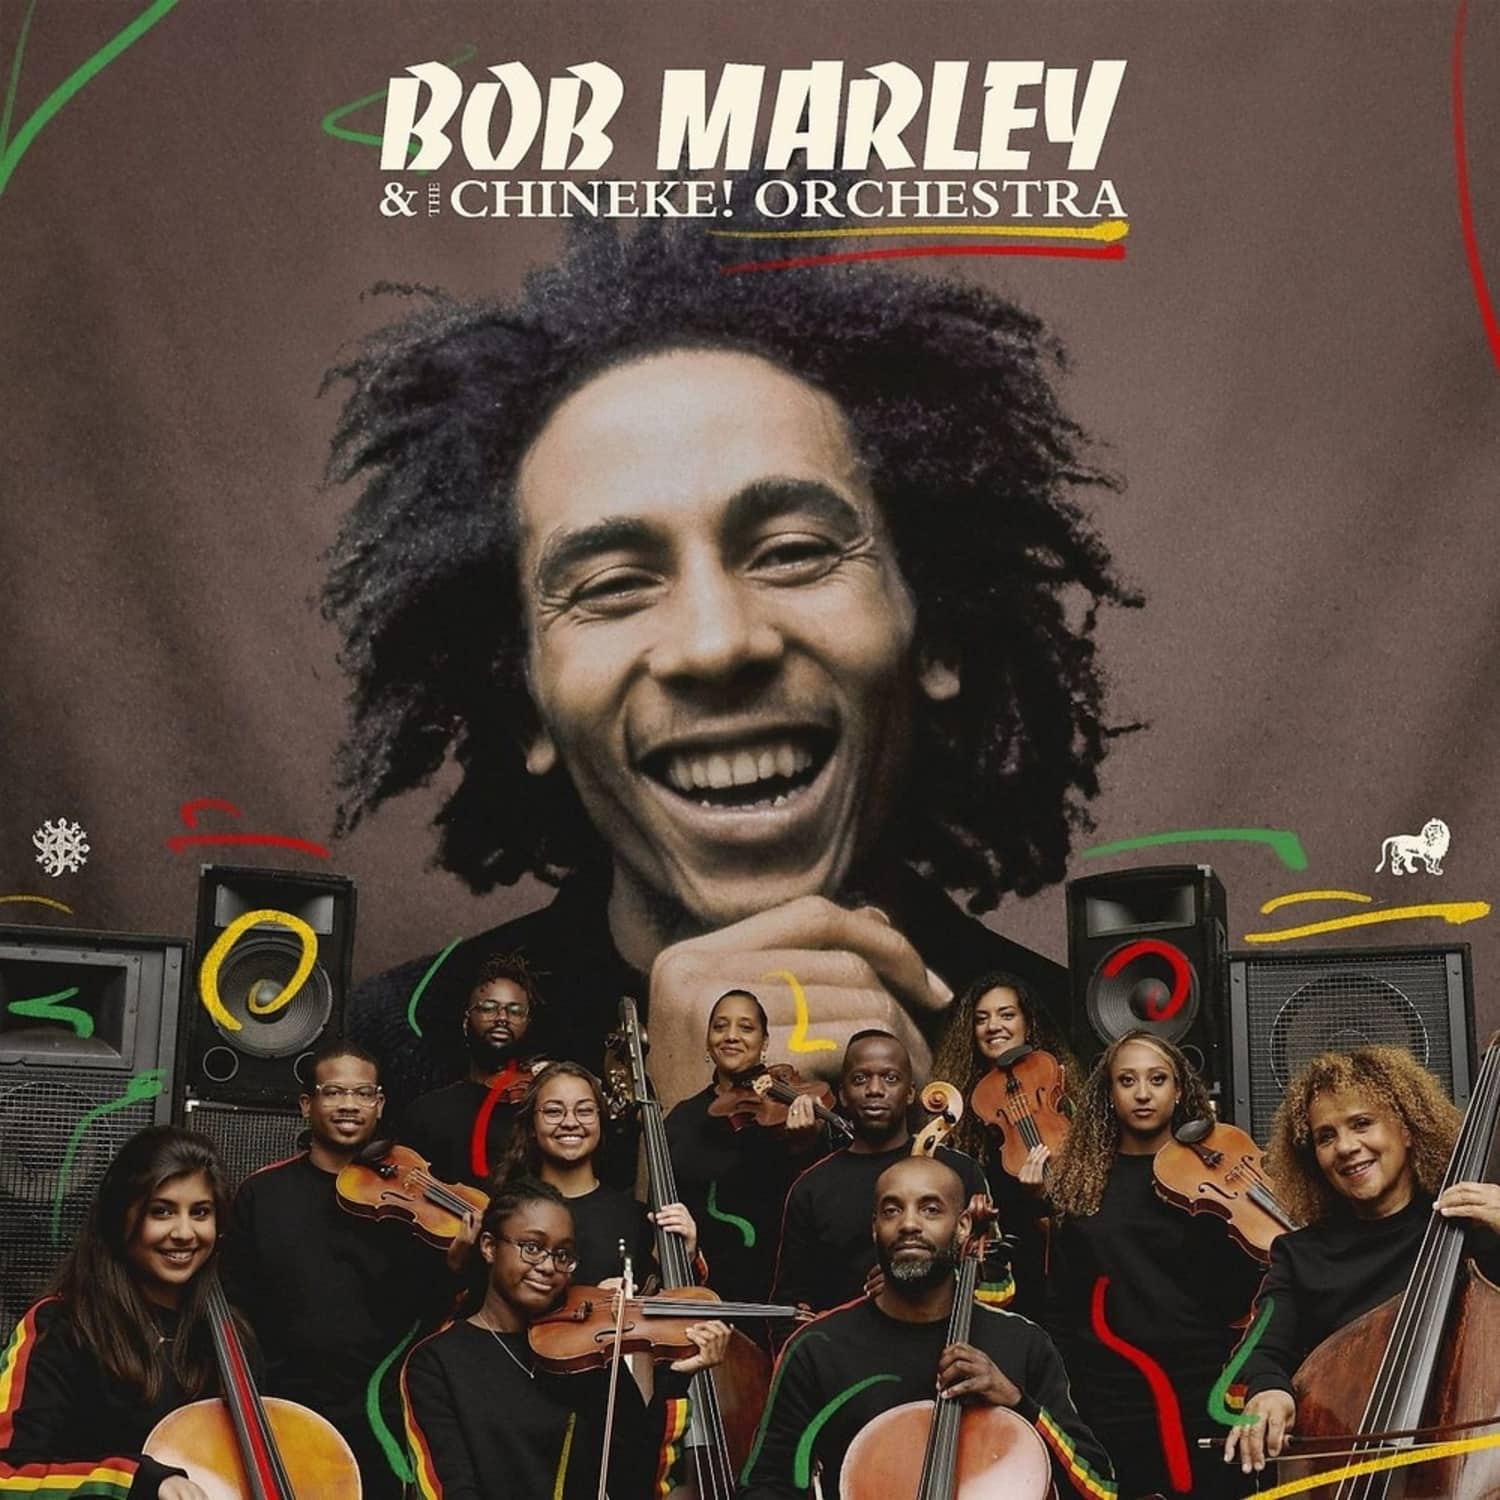 Bob Marley & Chineke! Orchestra The Wailers - BOB MARLEY WITH THE CHINEKE! ORCHESTRA 